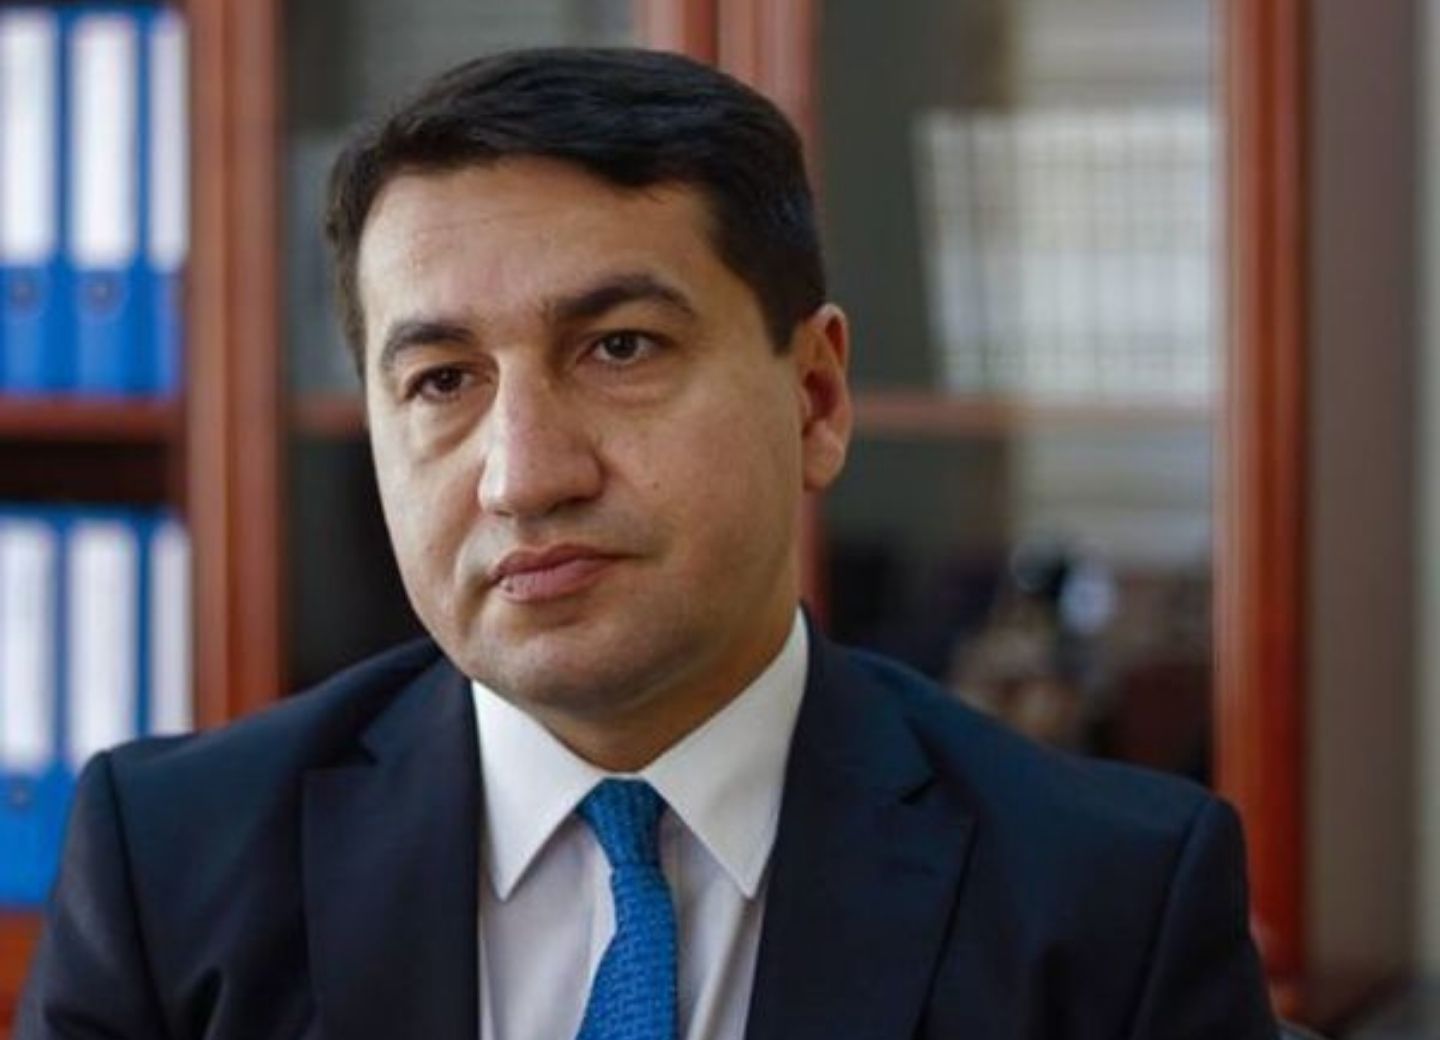 Хикмет Гаджиев: Визит французских депутатов в Карабах ставит под сомнение нейтралитет Франции как посредника